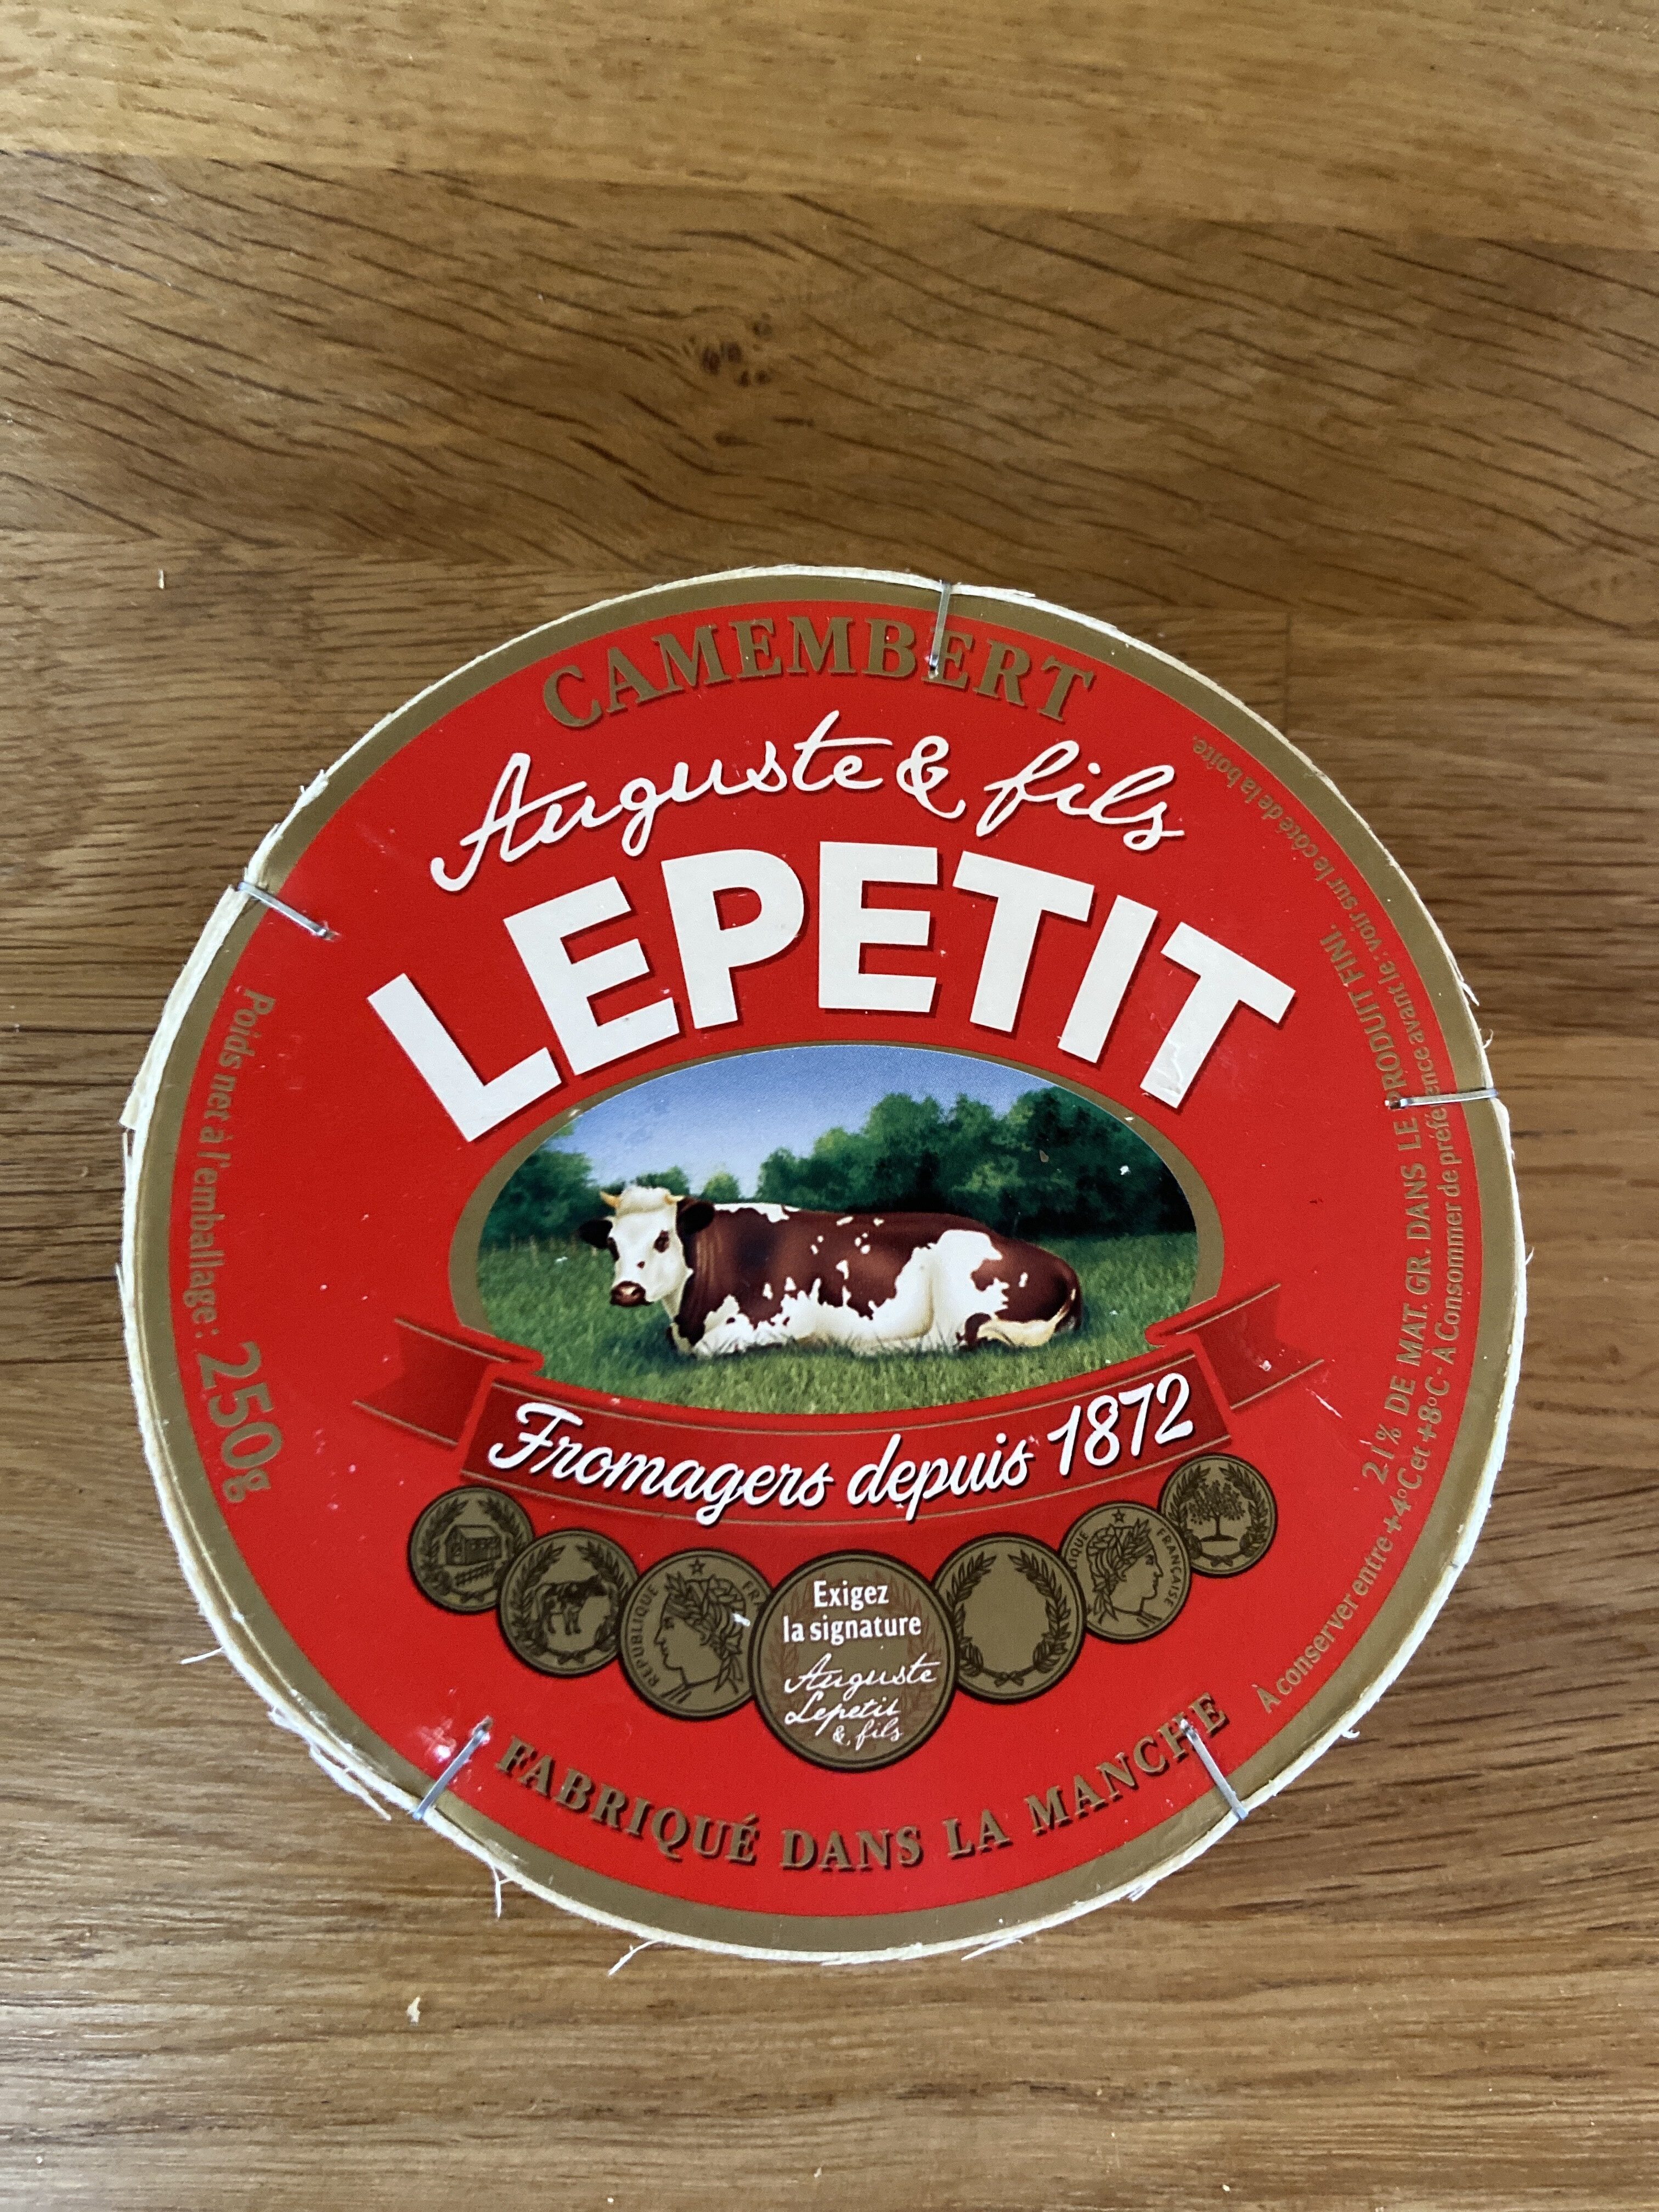 Camembert lepetit 250g 21% - Produit